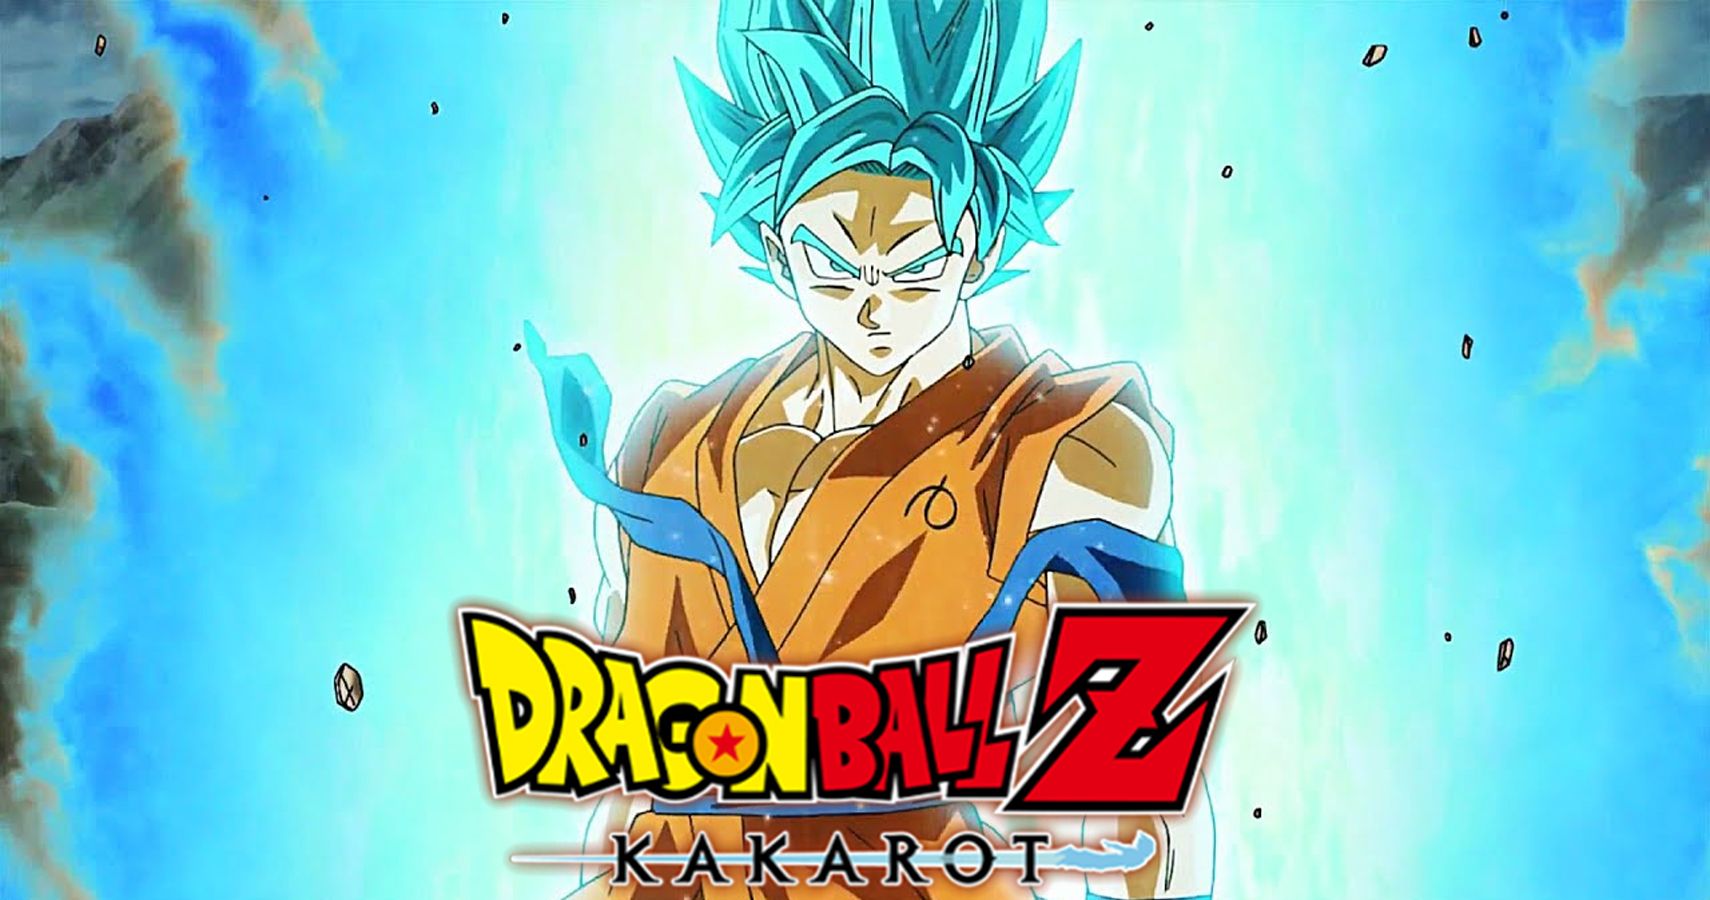 Dragon Ball Z: Kakarot's Second DLC Pack Adds SSGSS Goku And Vegeta